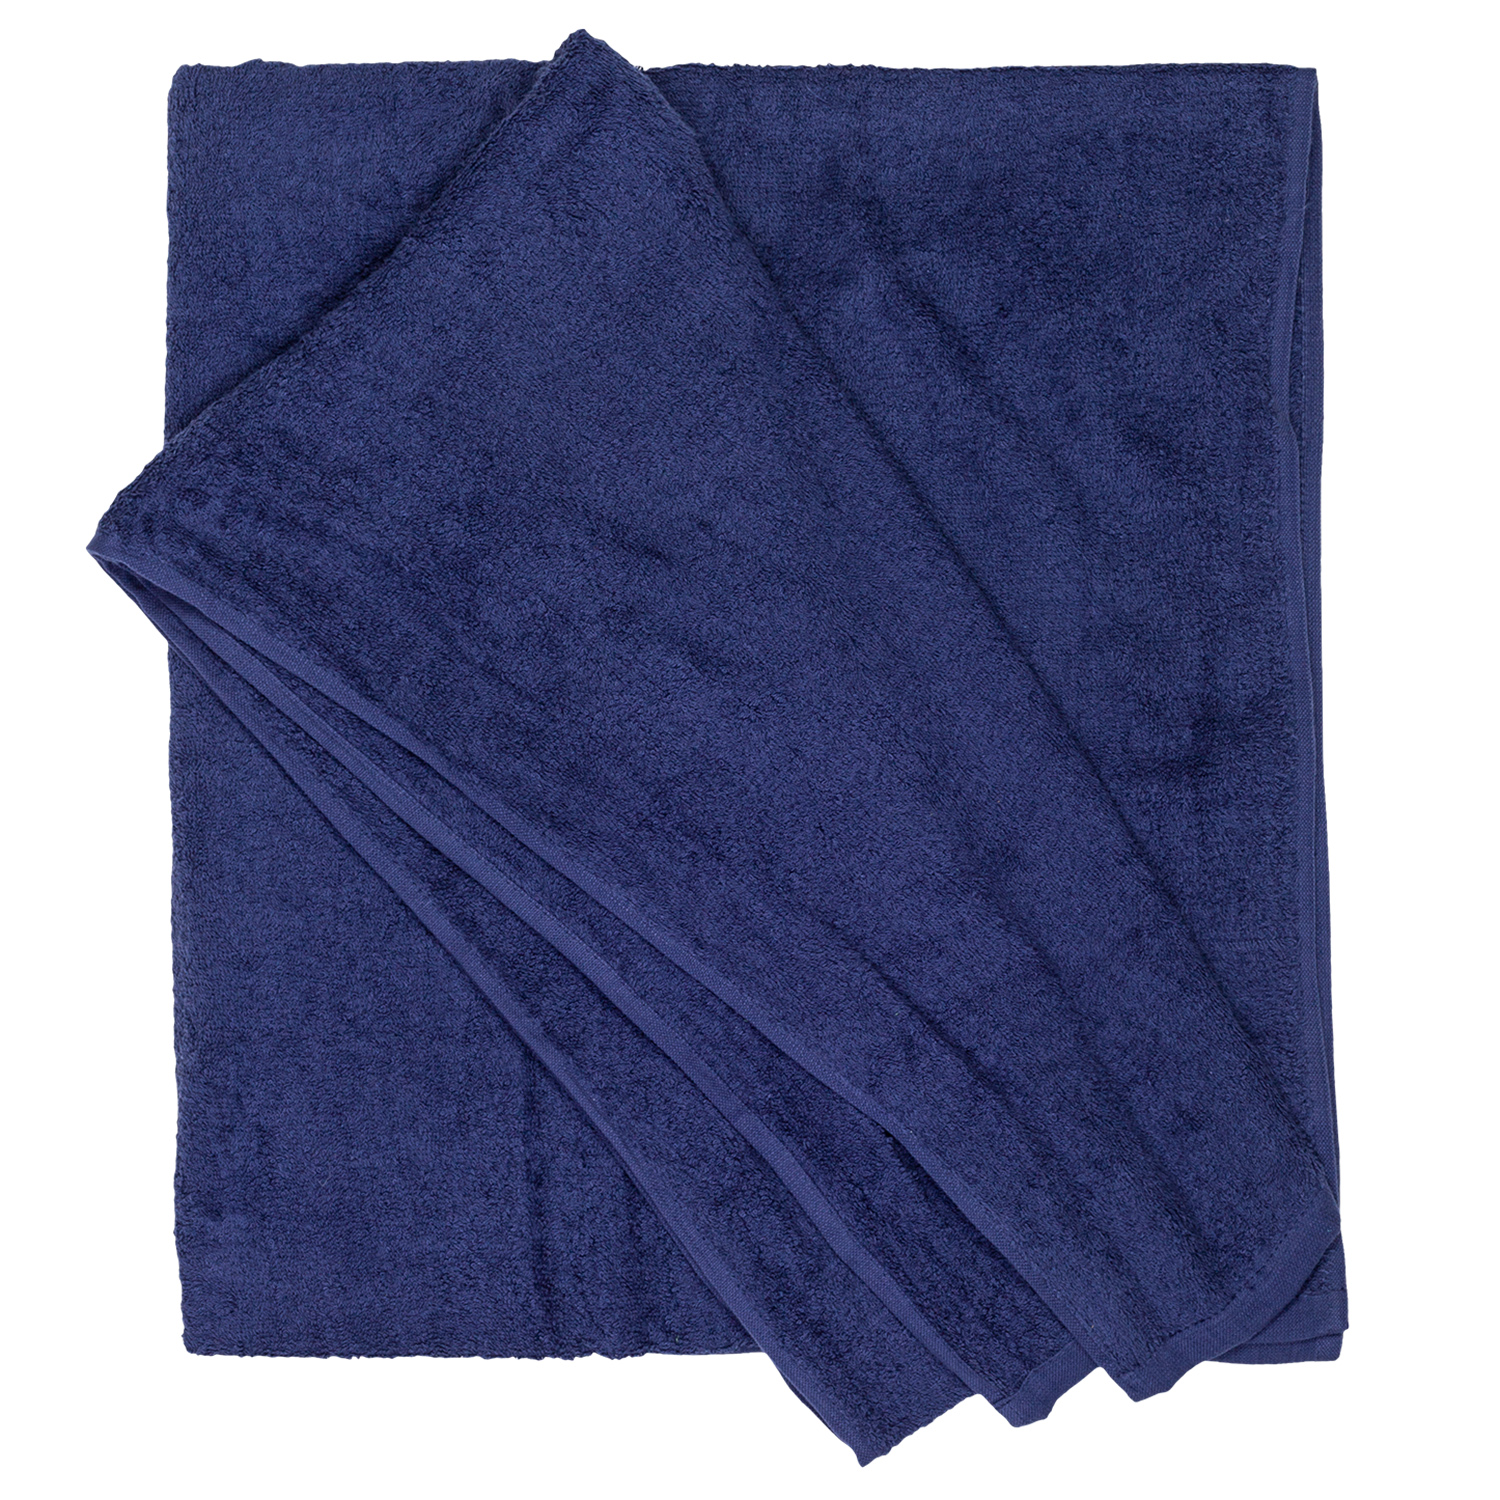 Bath towel series Helsinki in navy by Adamo in large sizes 100x220 cm or 155x220 cm